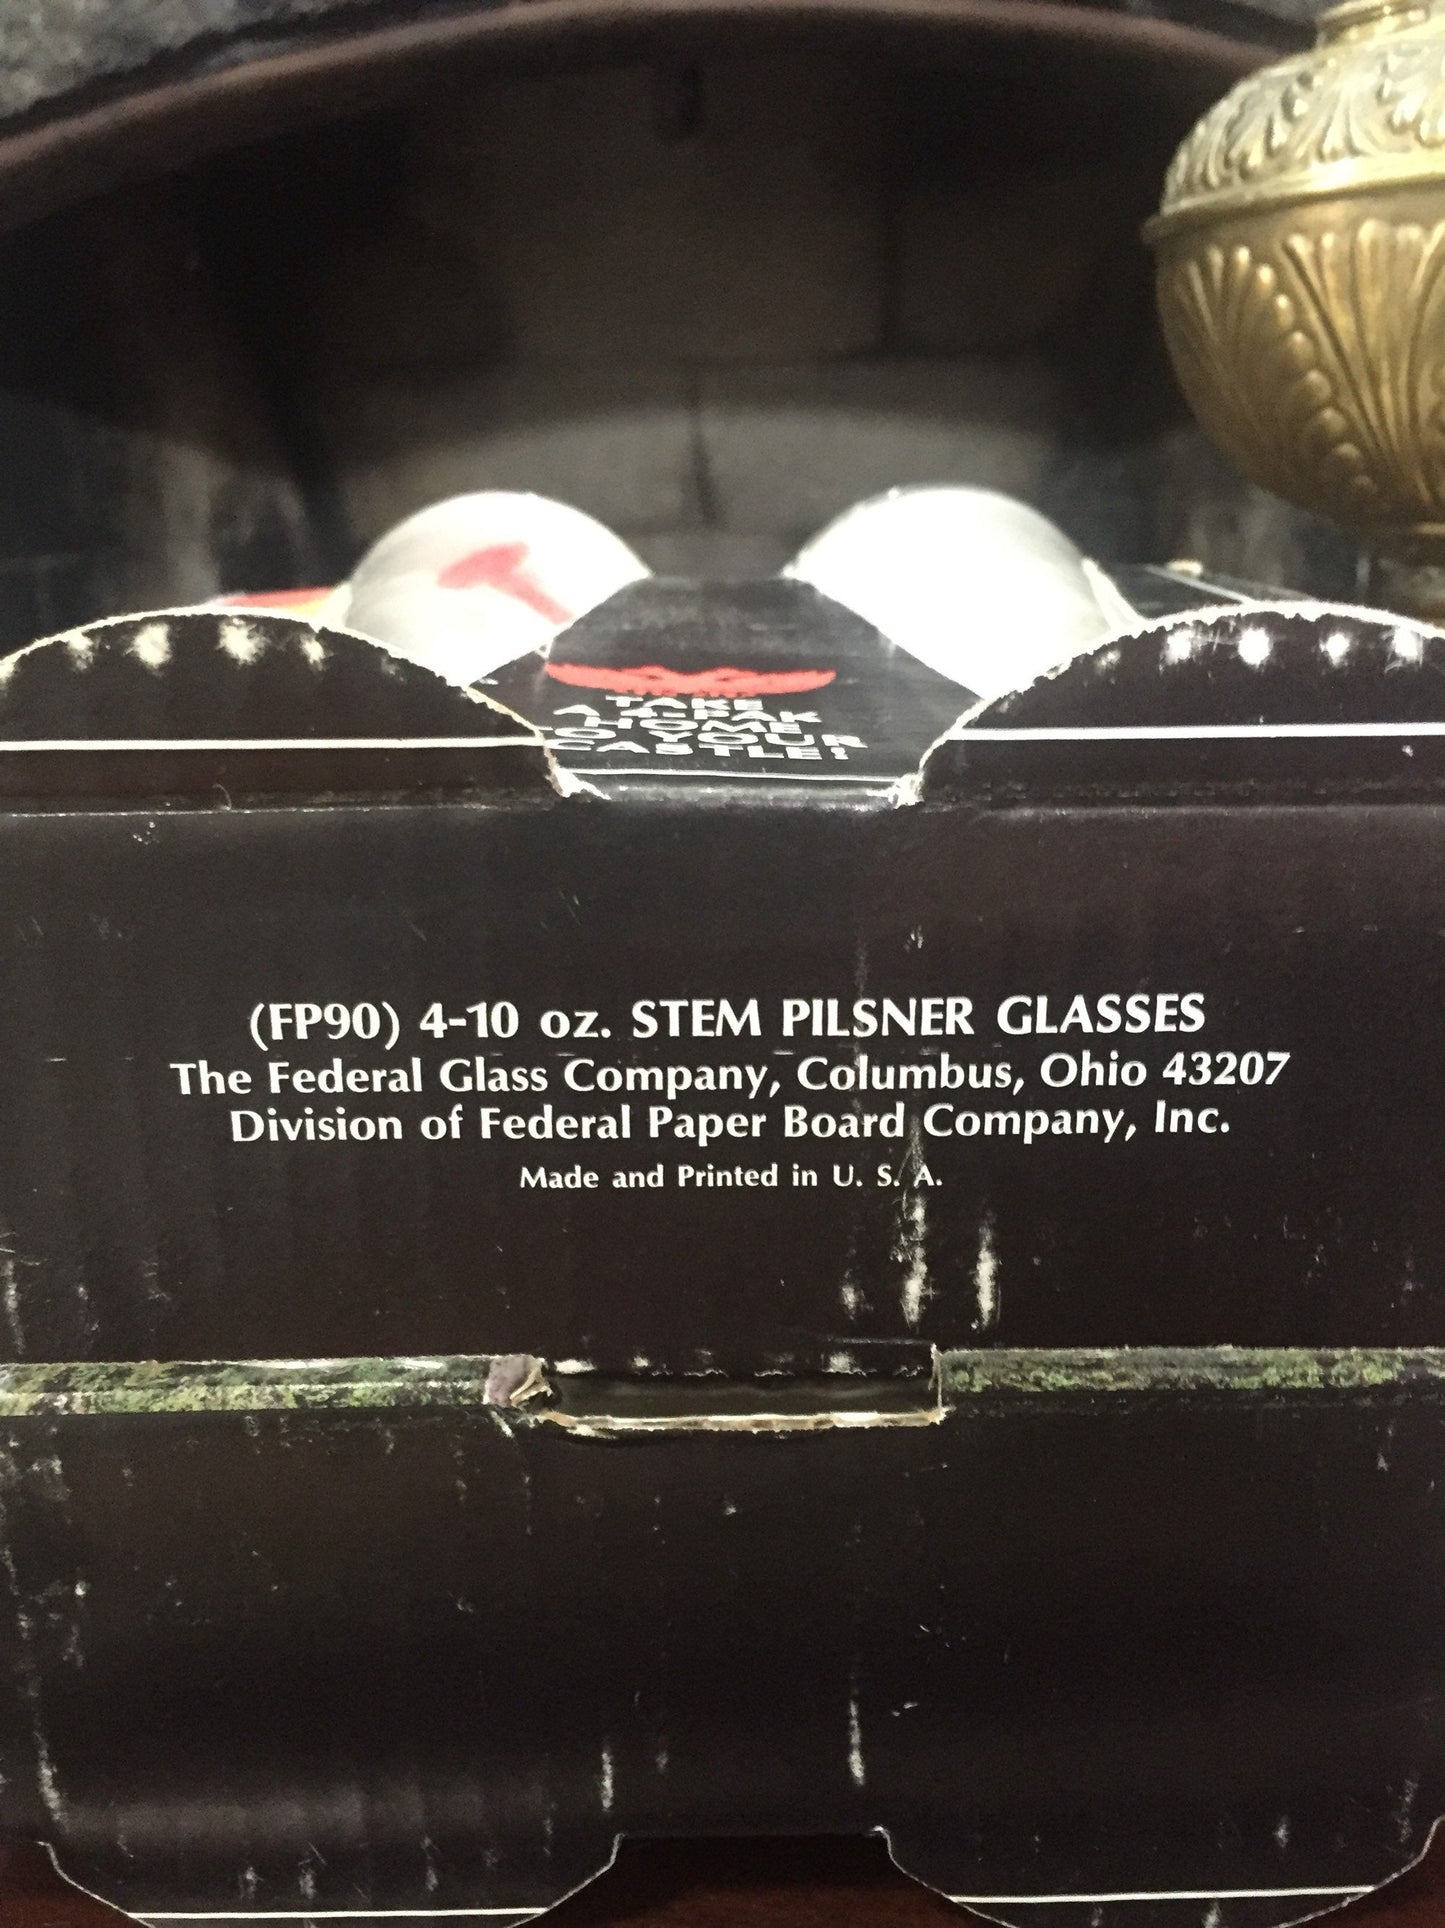 Federl Glass set of 4 Pilsner Glasses - Vintage Federal Glass Unopened Box - Vintage Bar Decor - NOS Federal Glass - Mid Century Decor